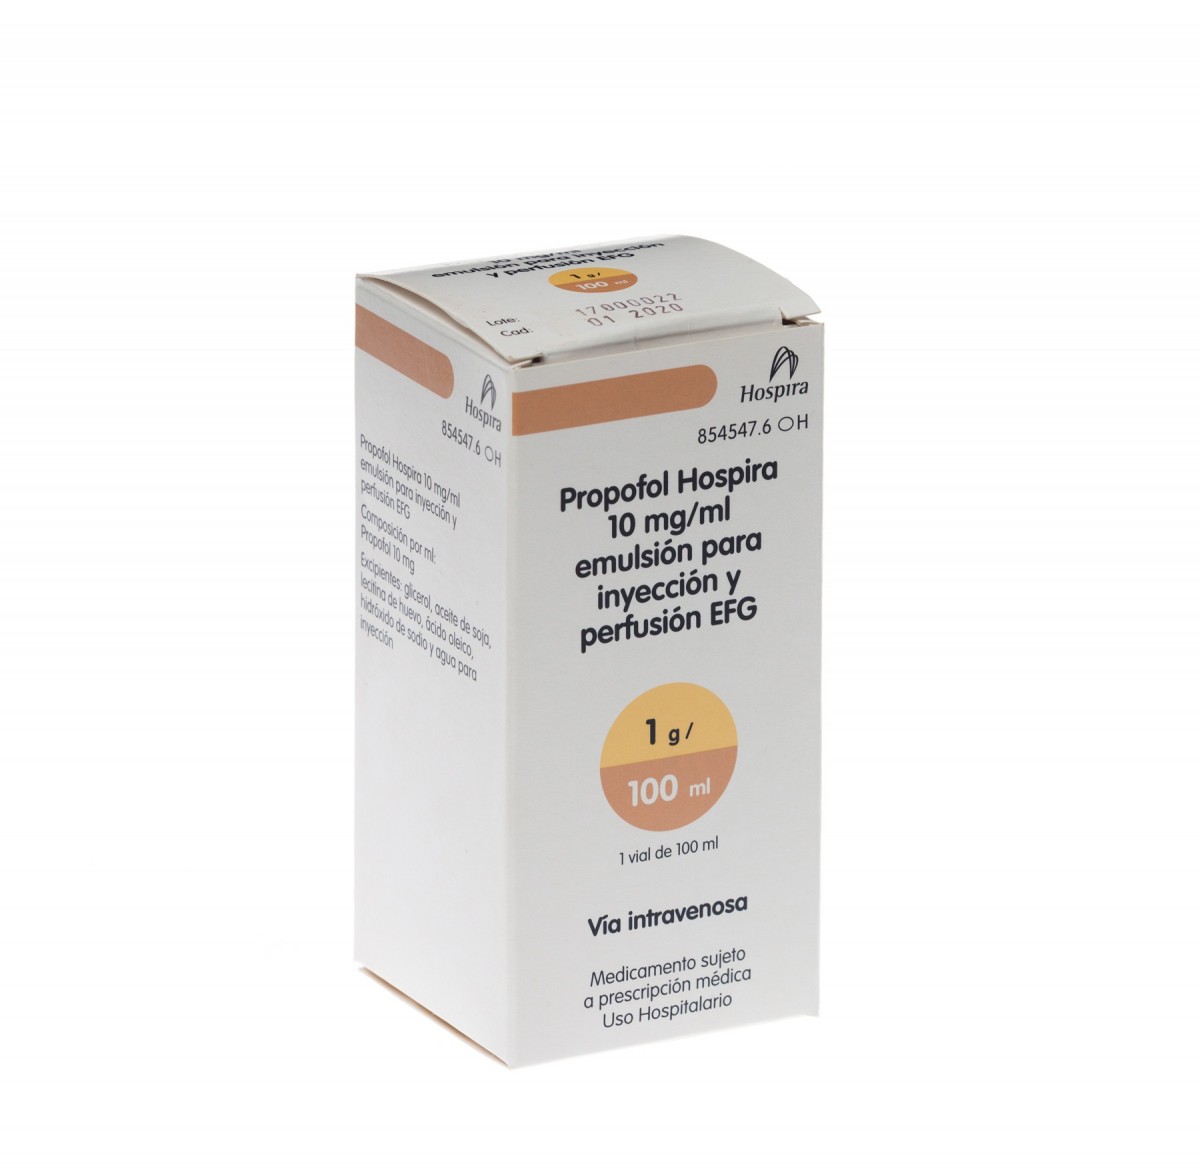 PROPOFOL HOSPIRA 10 mg/ml EMULSION PARA INYECCION Y PERFUSION EFG, 1 vial de 100 ml fotografía del envase.